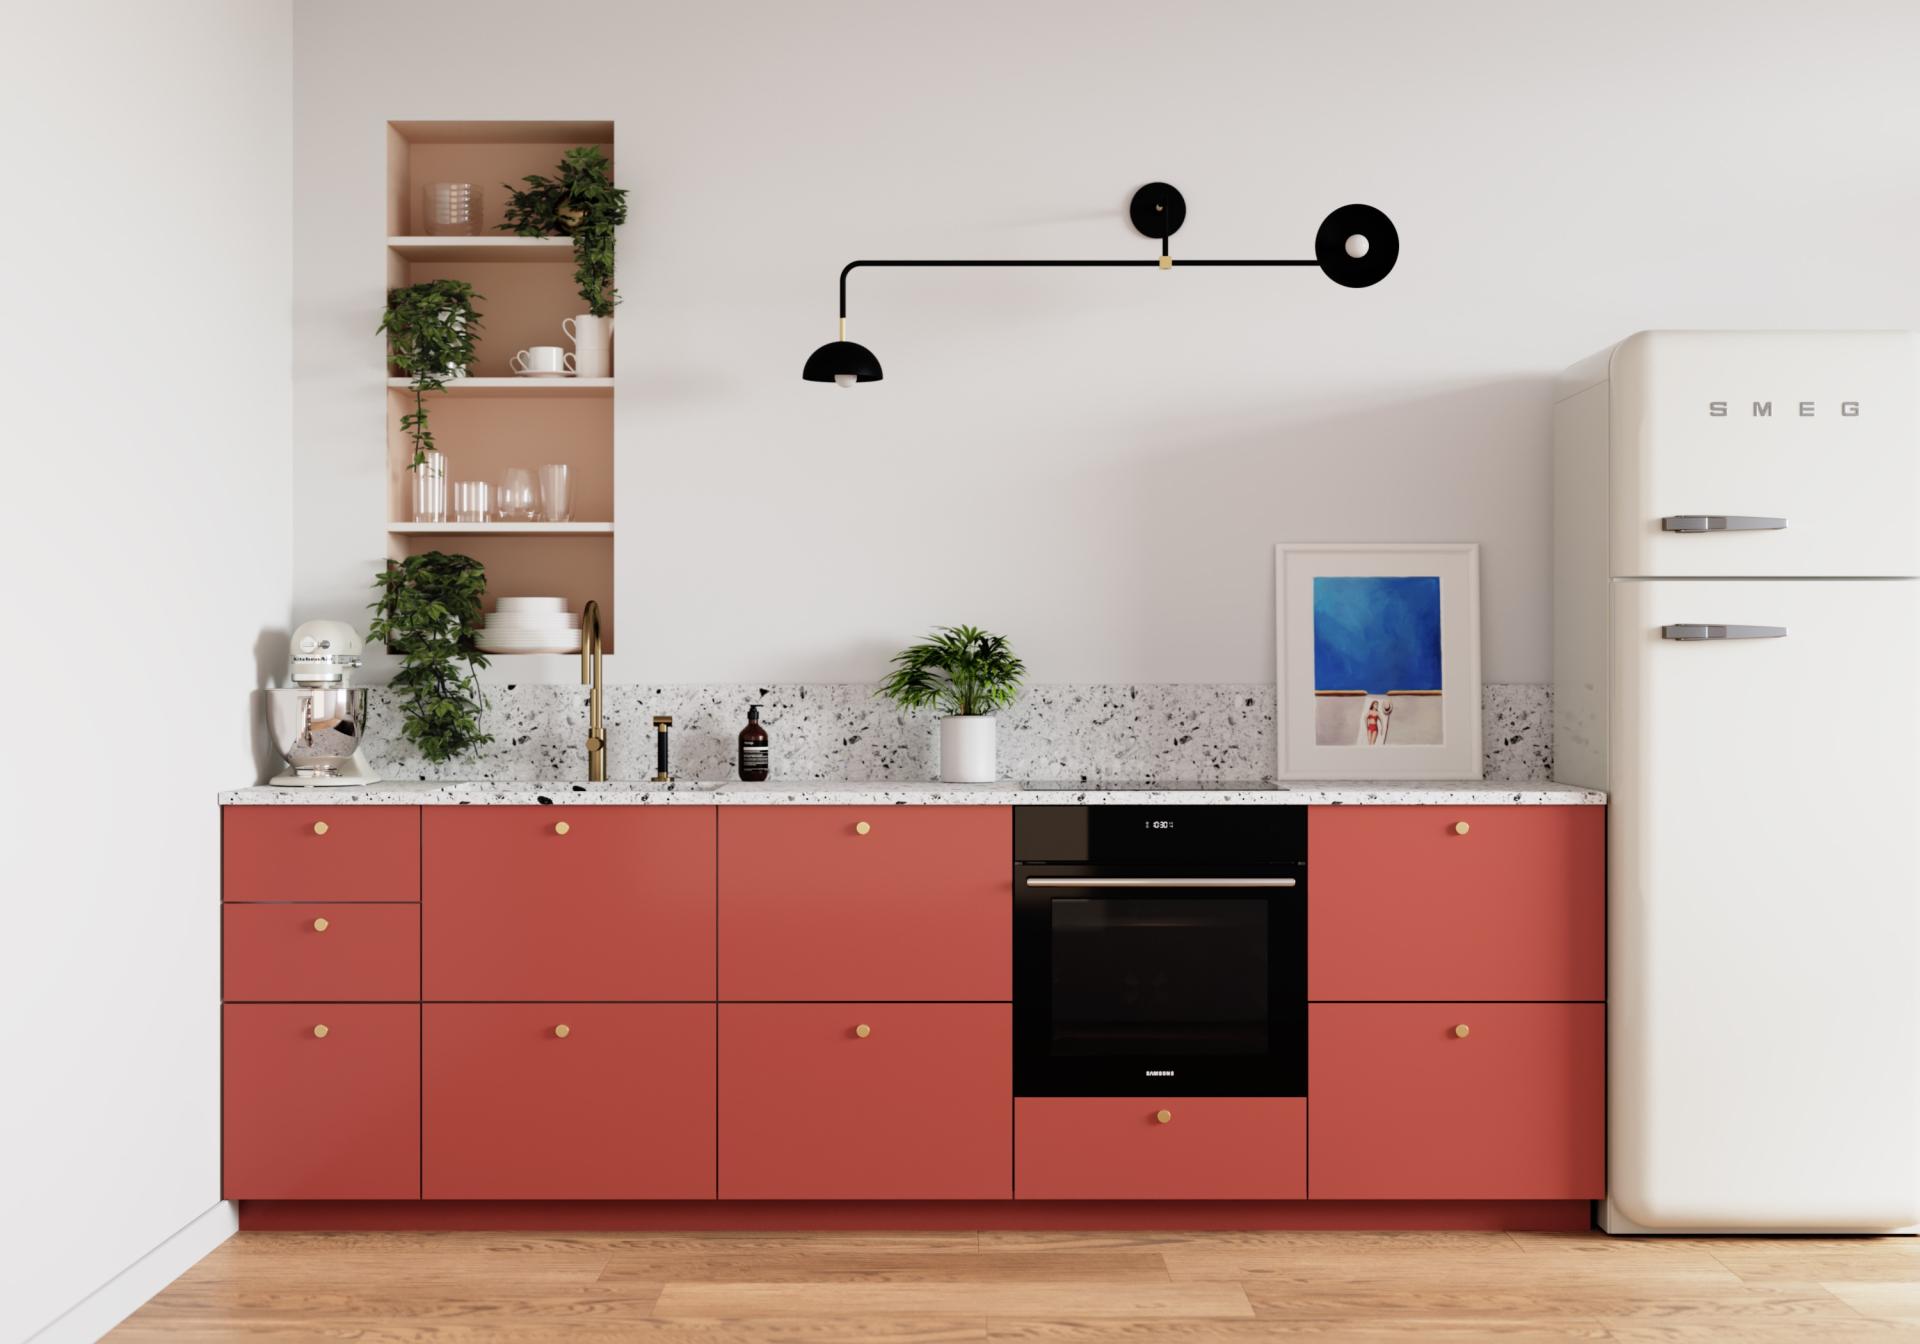 Samir & Clara's kitchen in Red 01 - Terra